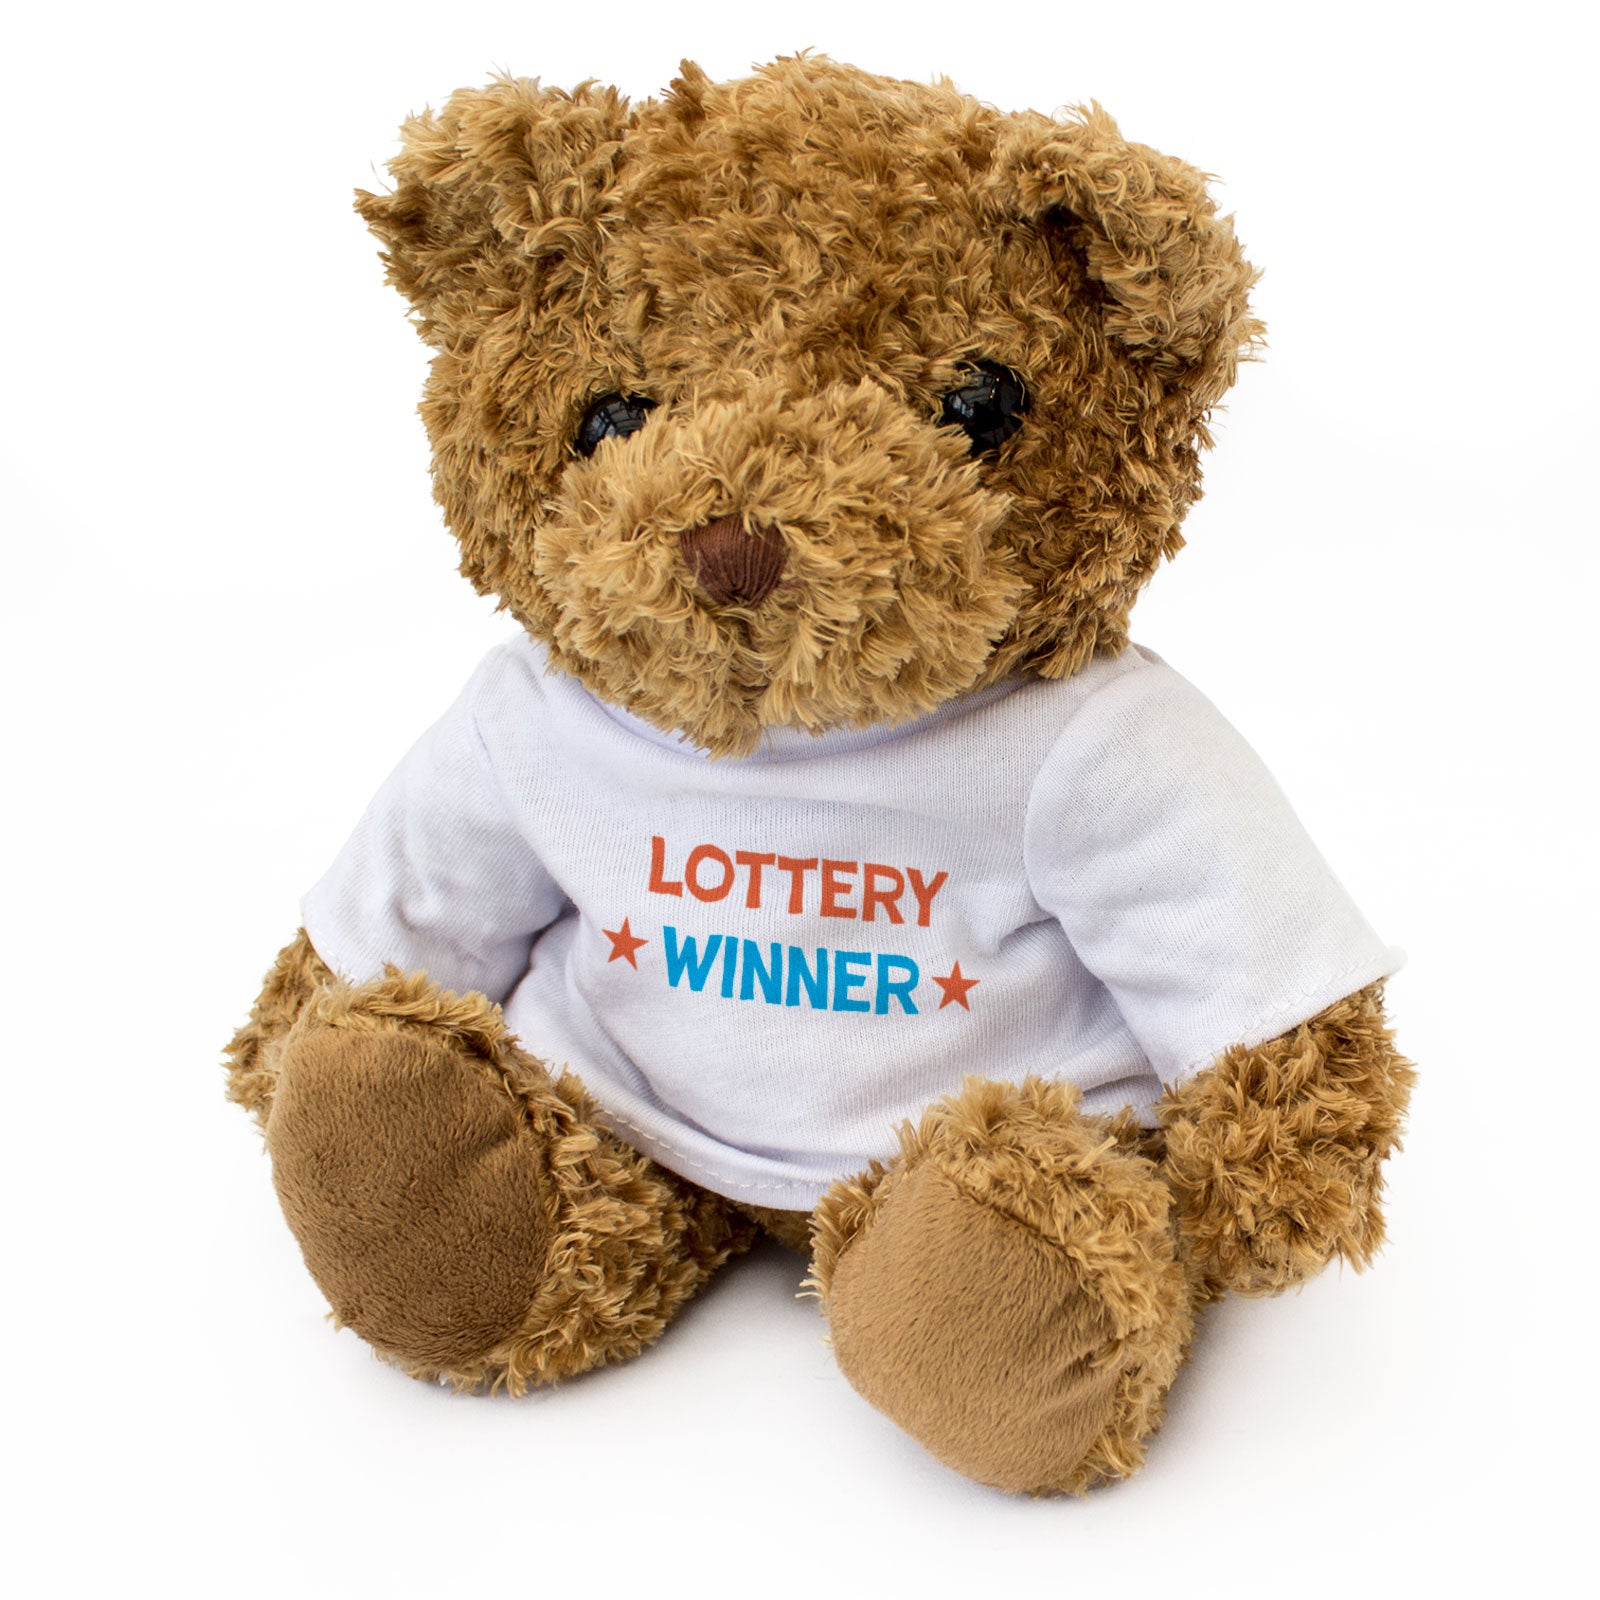 Lottery Winner - Teddy Bear